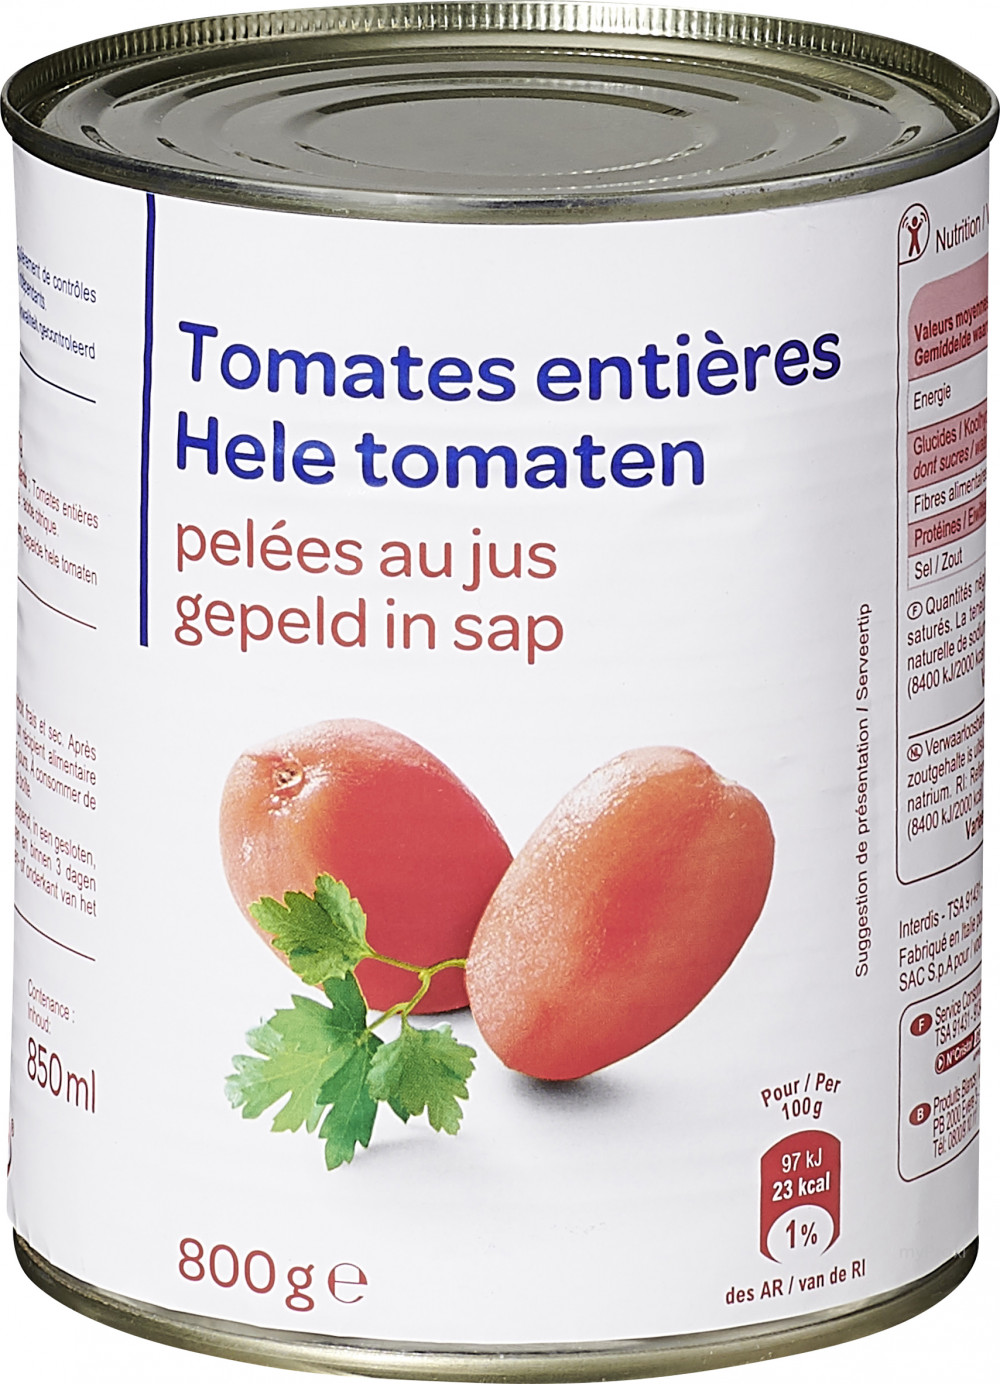 Epluche tomate - Peler des tomates - Marque française La Fourmi